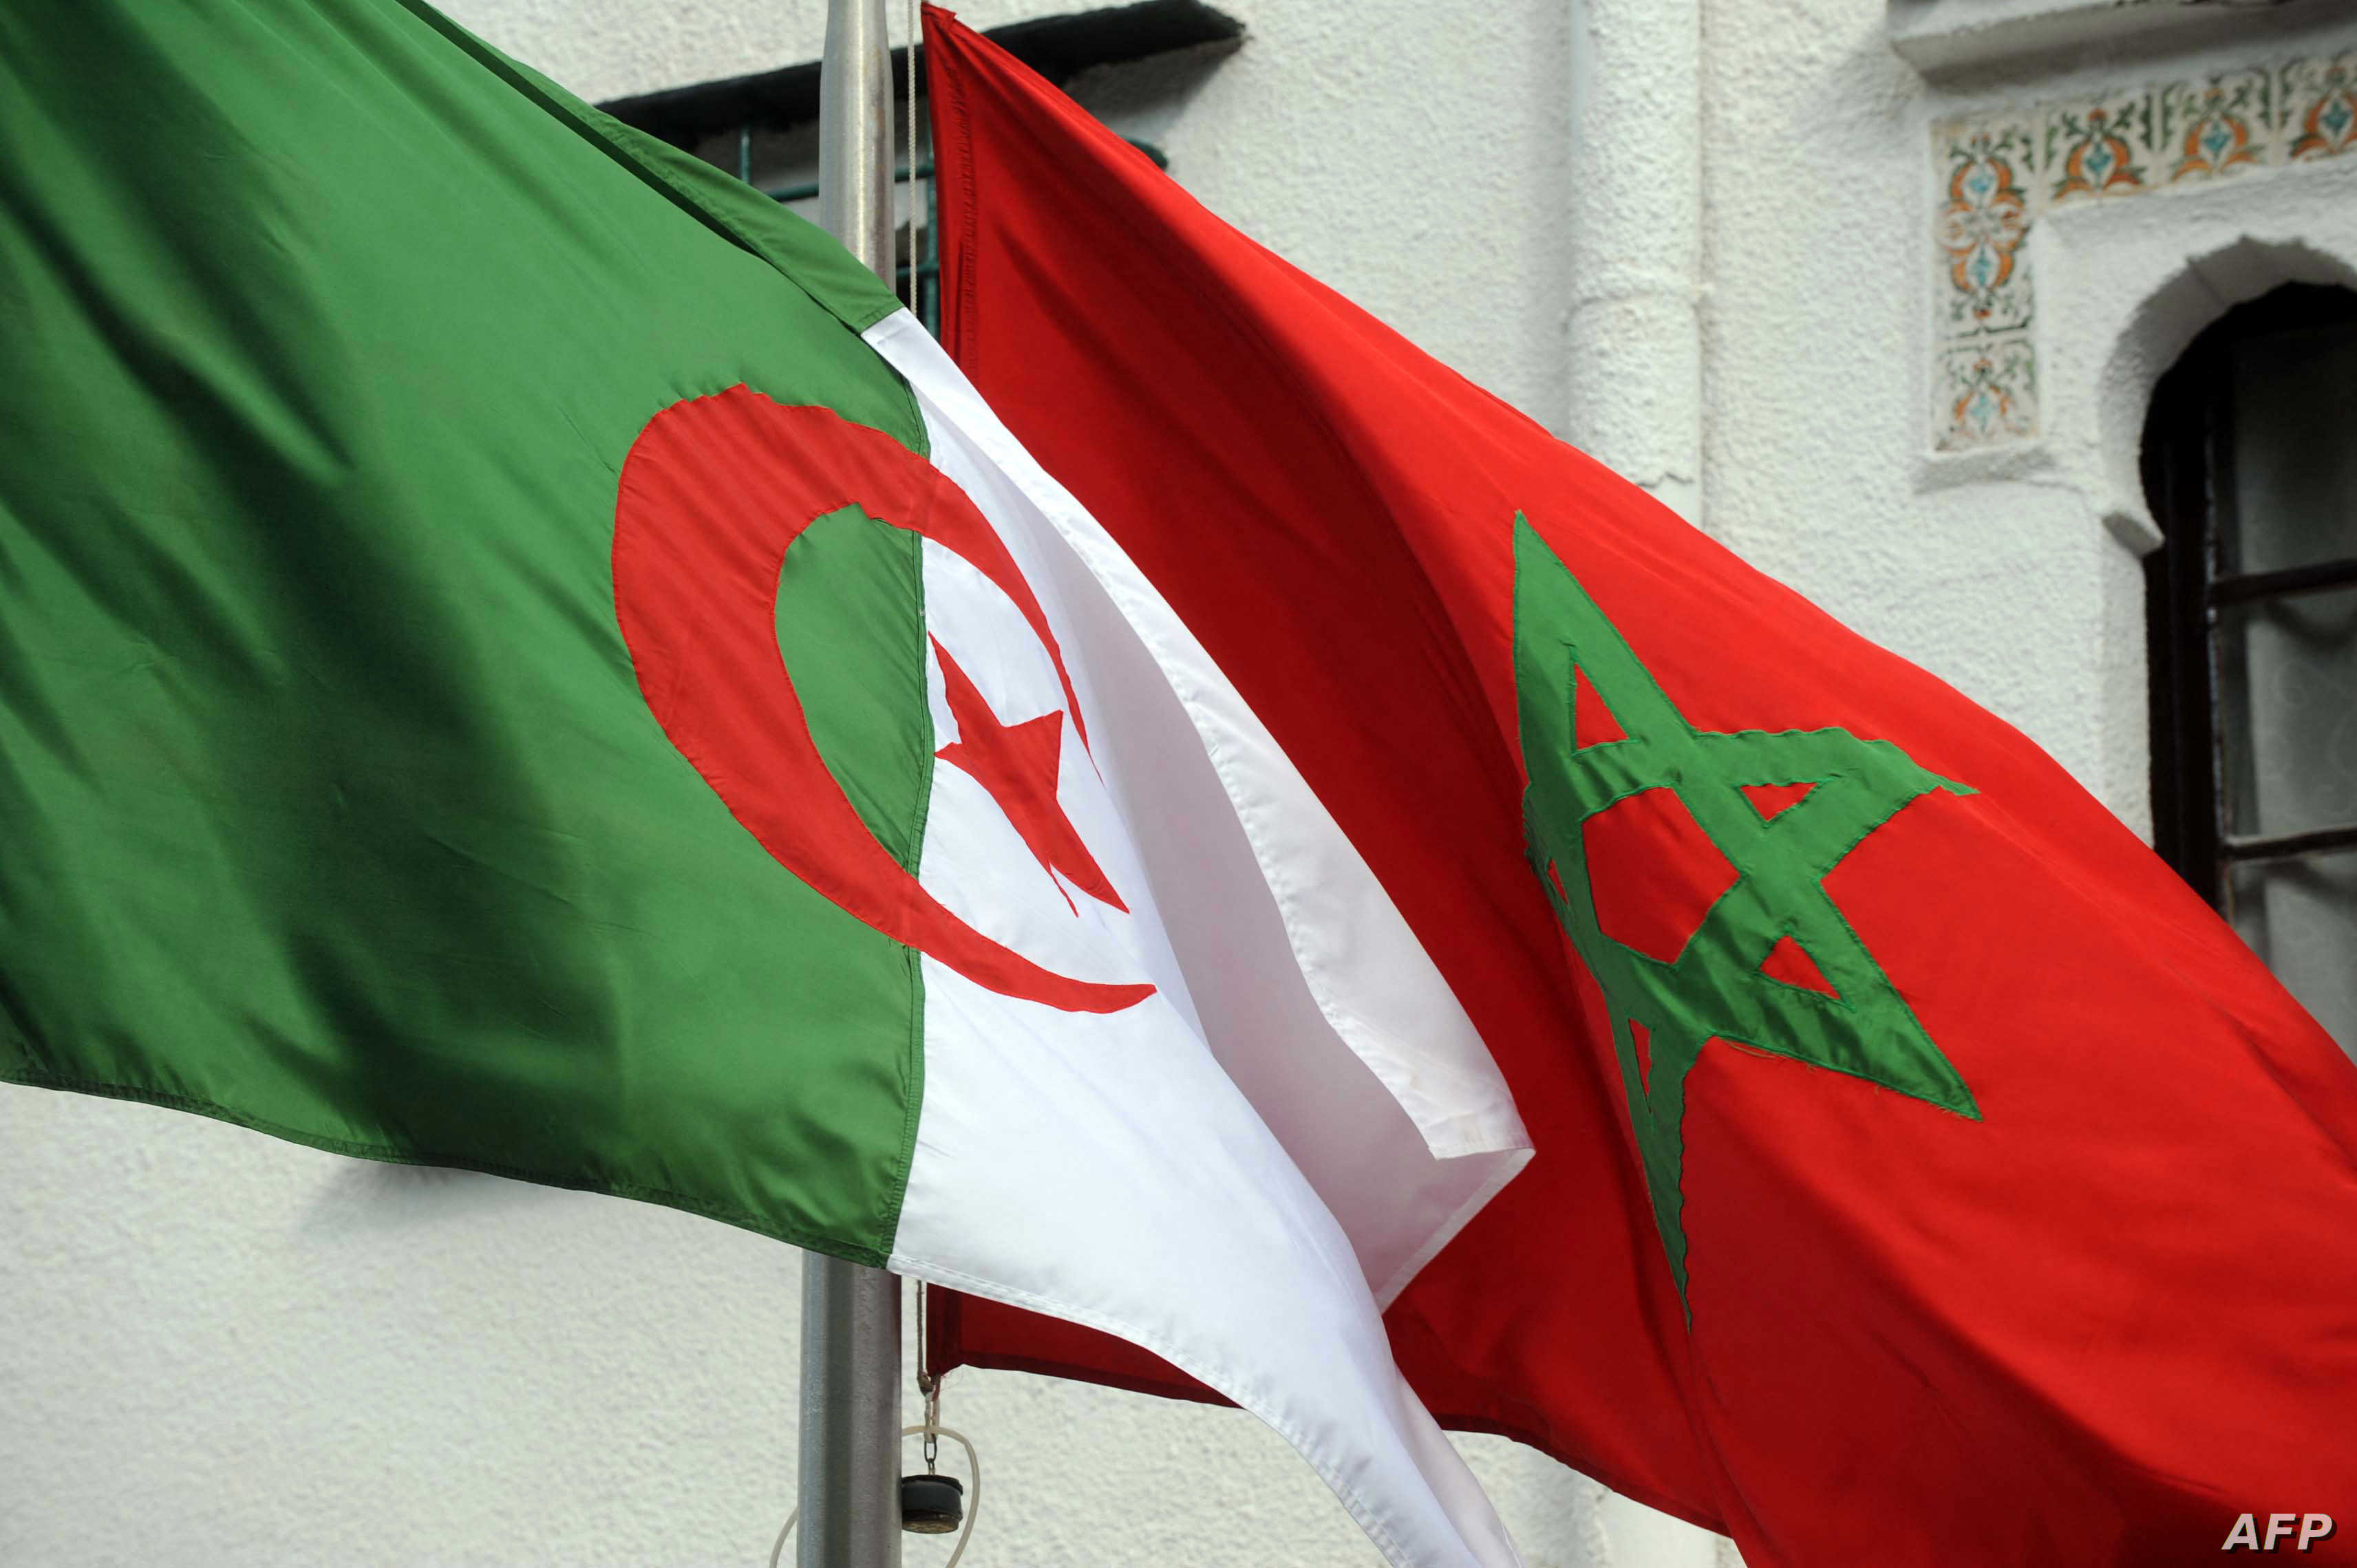 الدور الاسرائيلي في الخلافات الجزائرية - المغربية